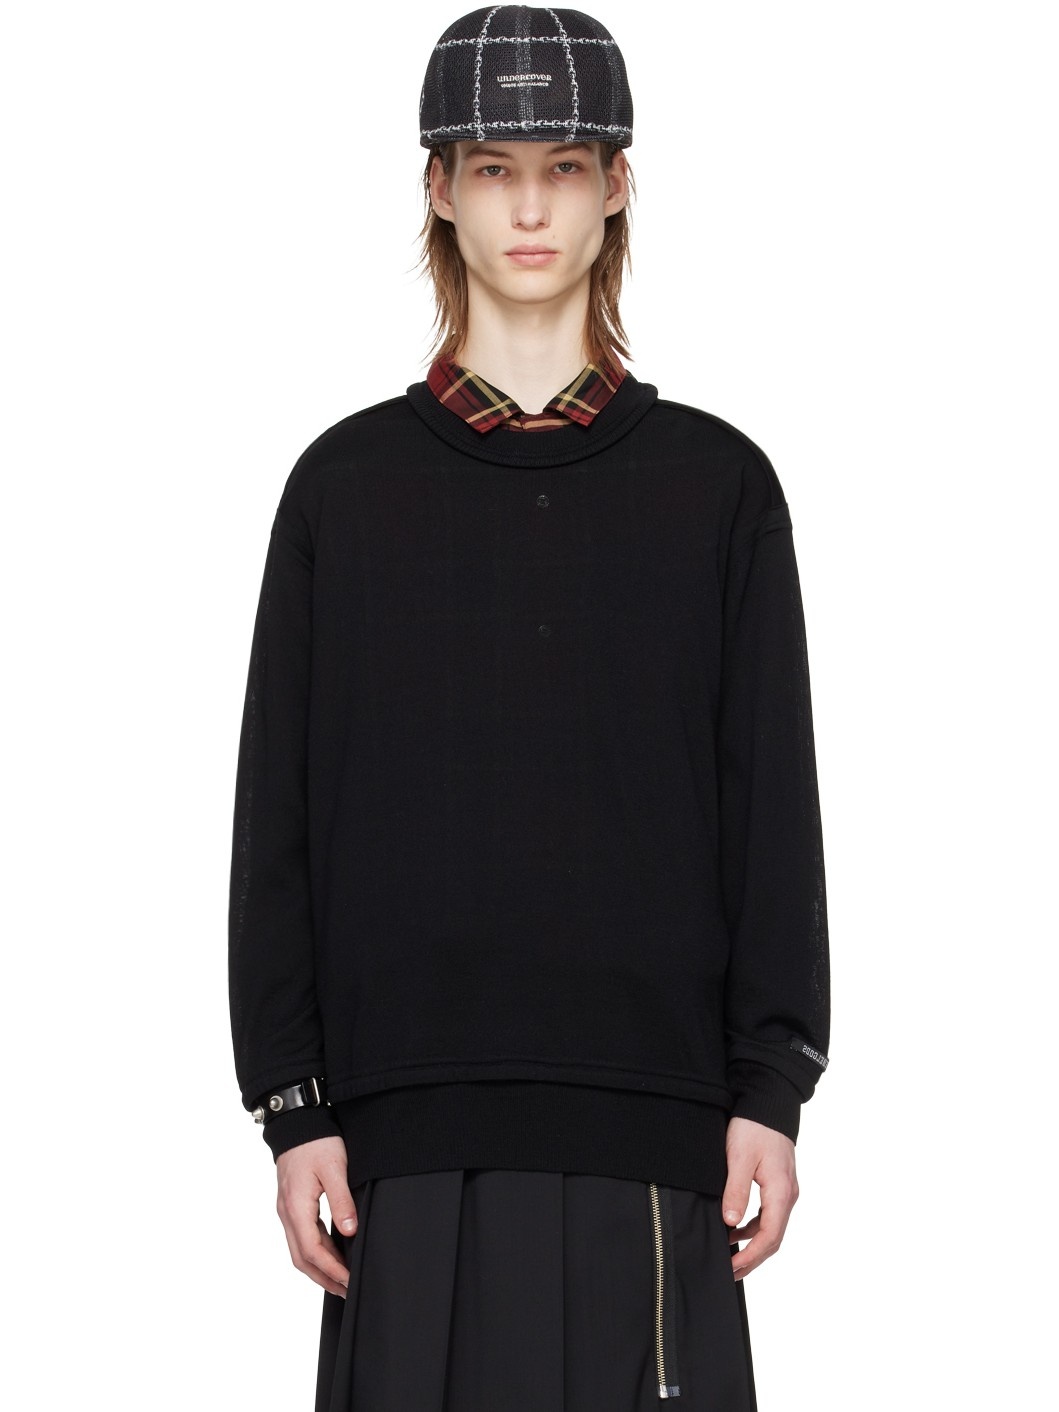 Black Exposed Seam Sweater - 1